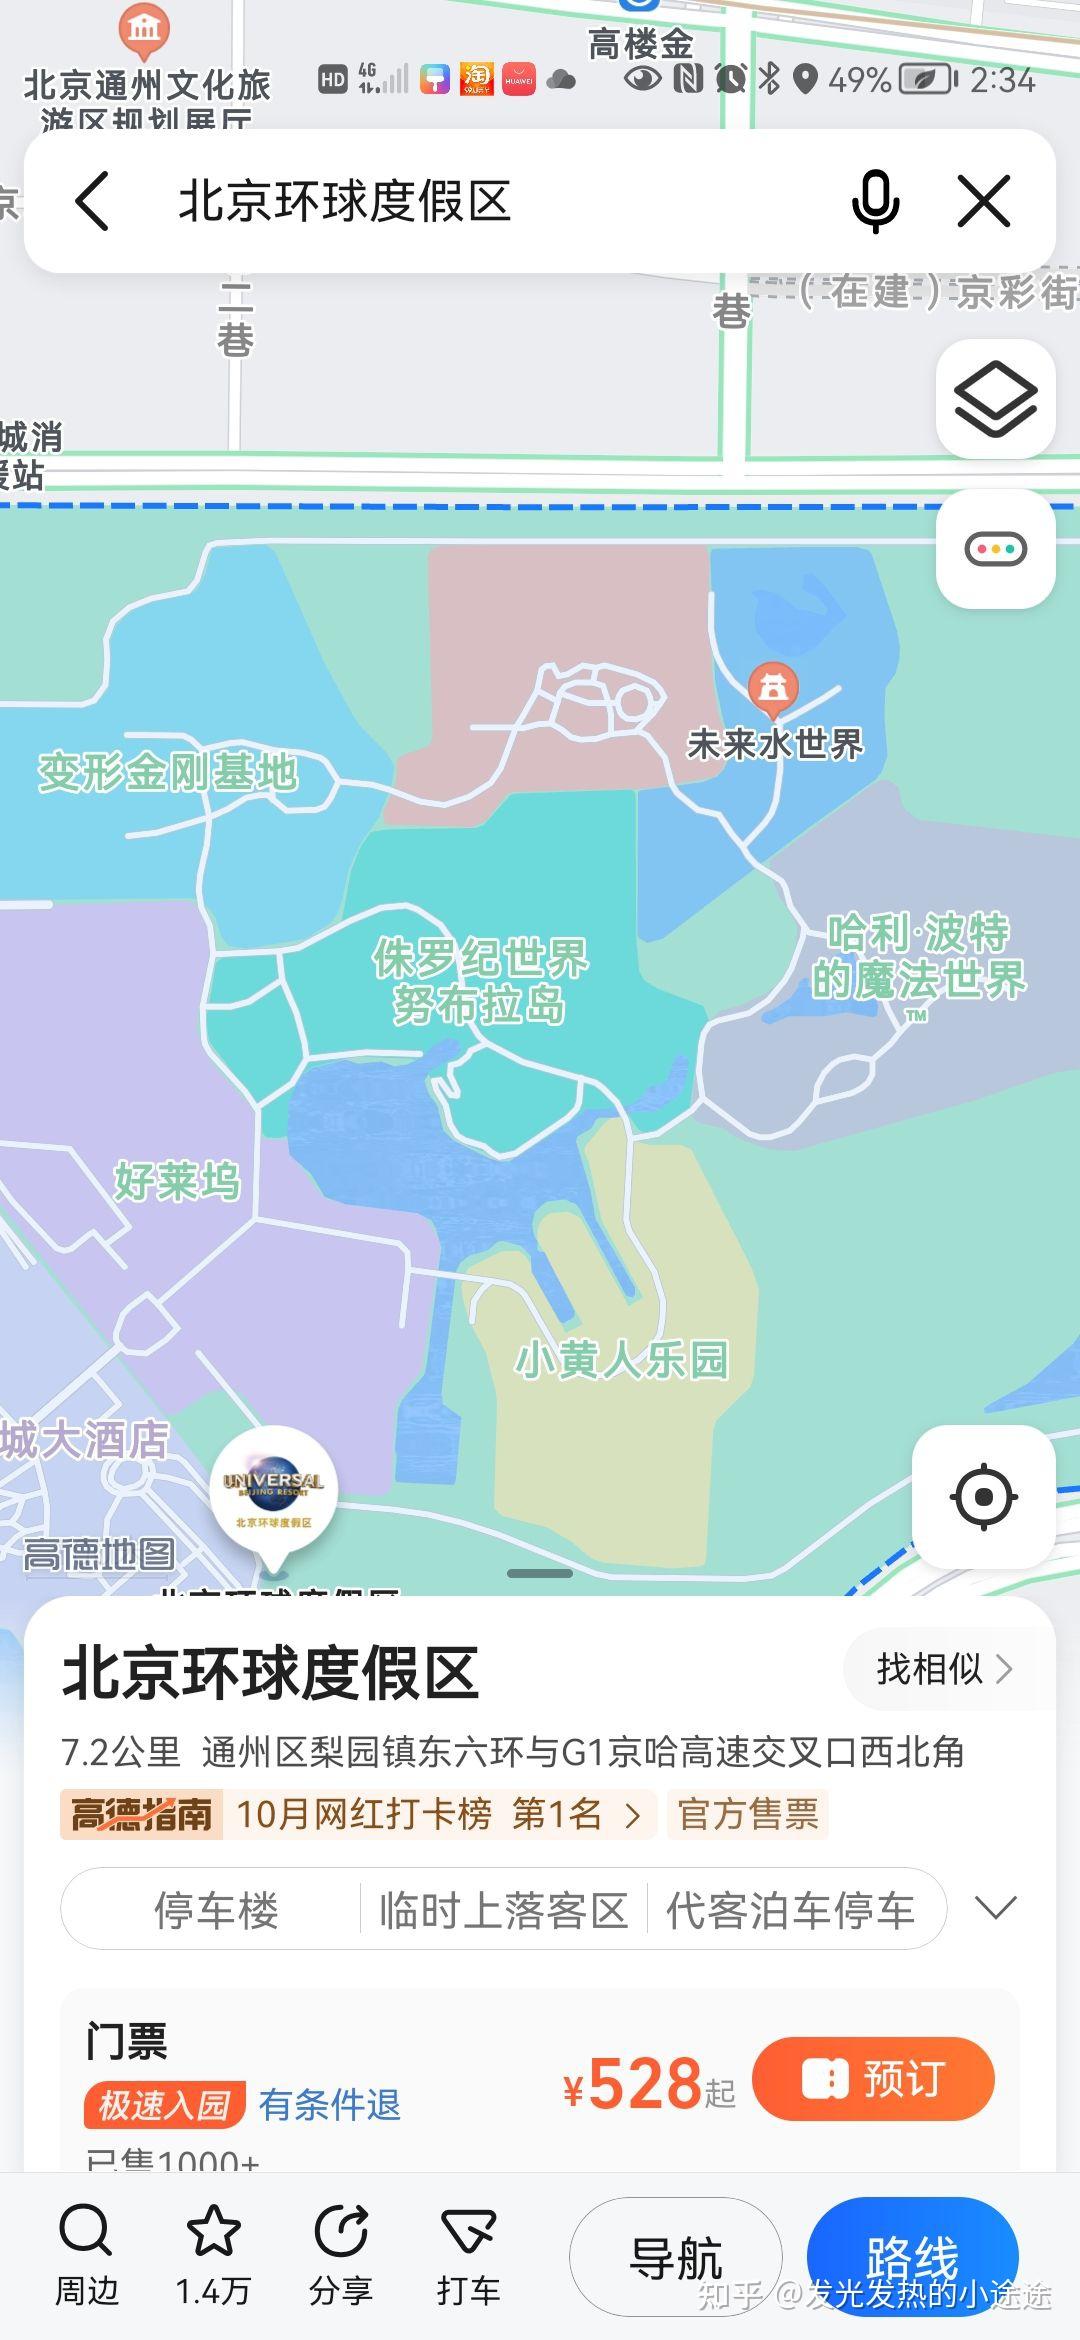 北京环球影城大门位置图片